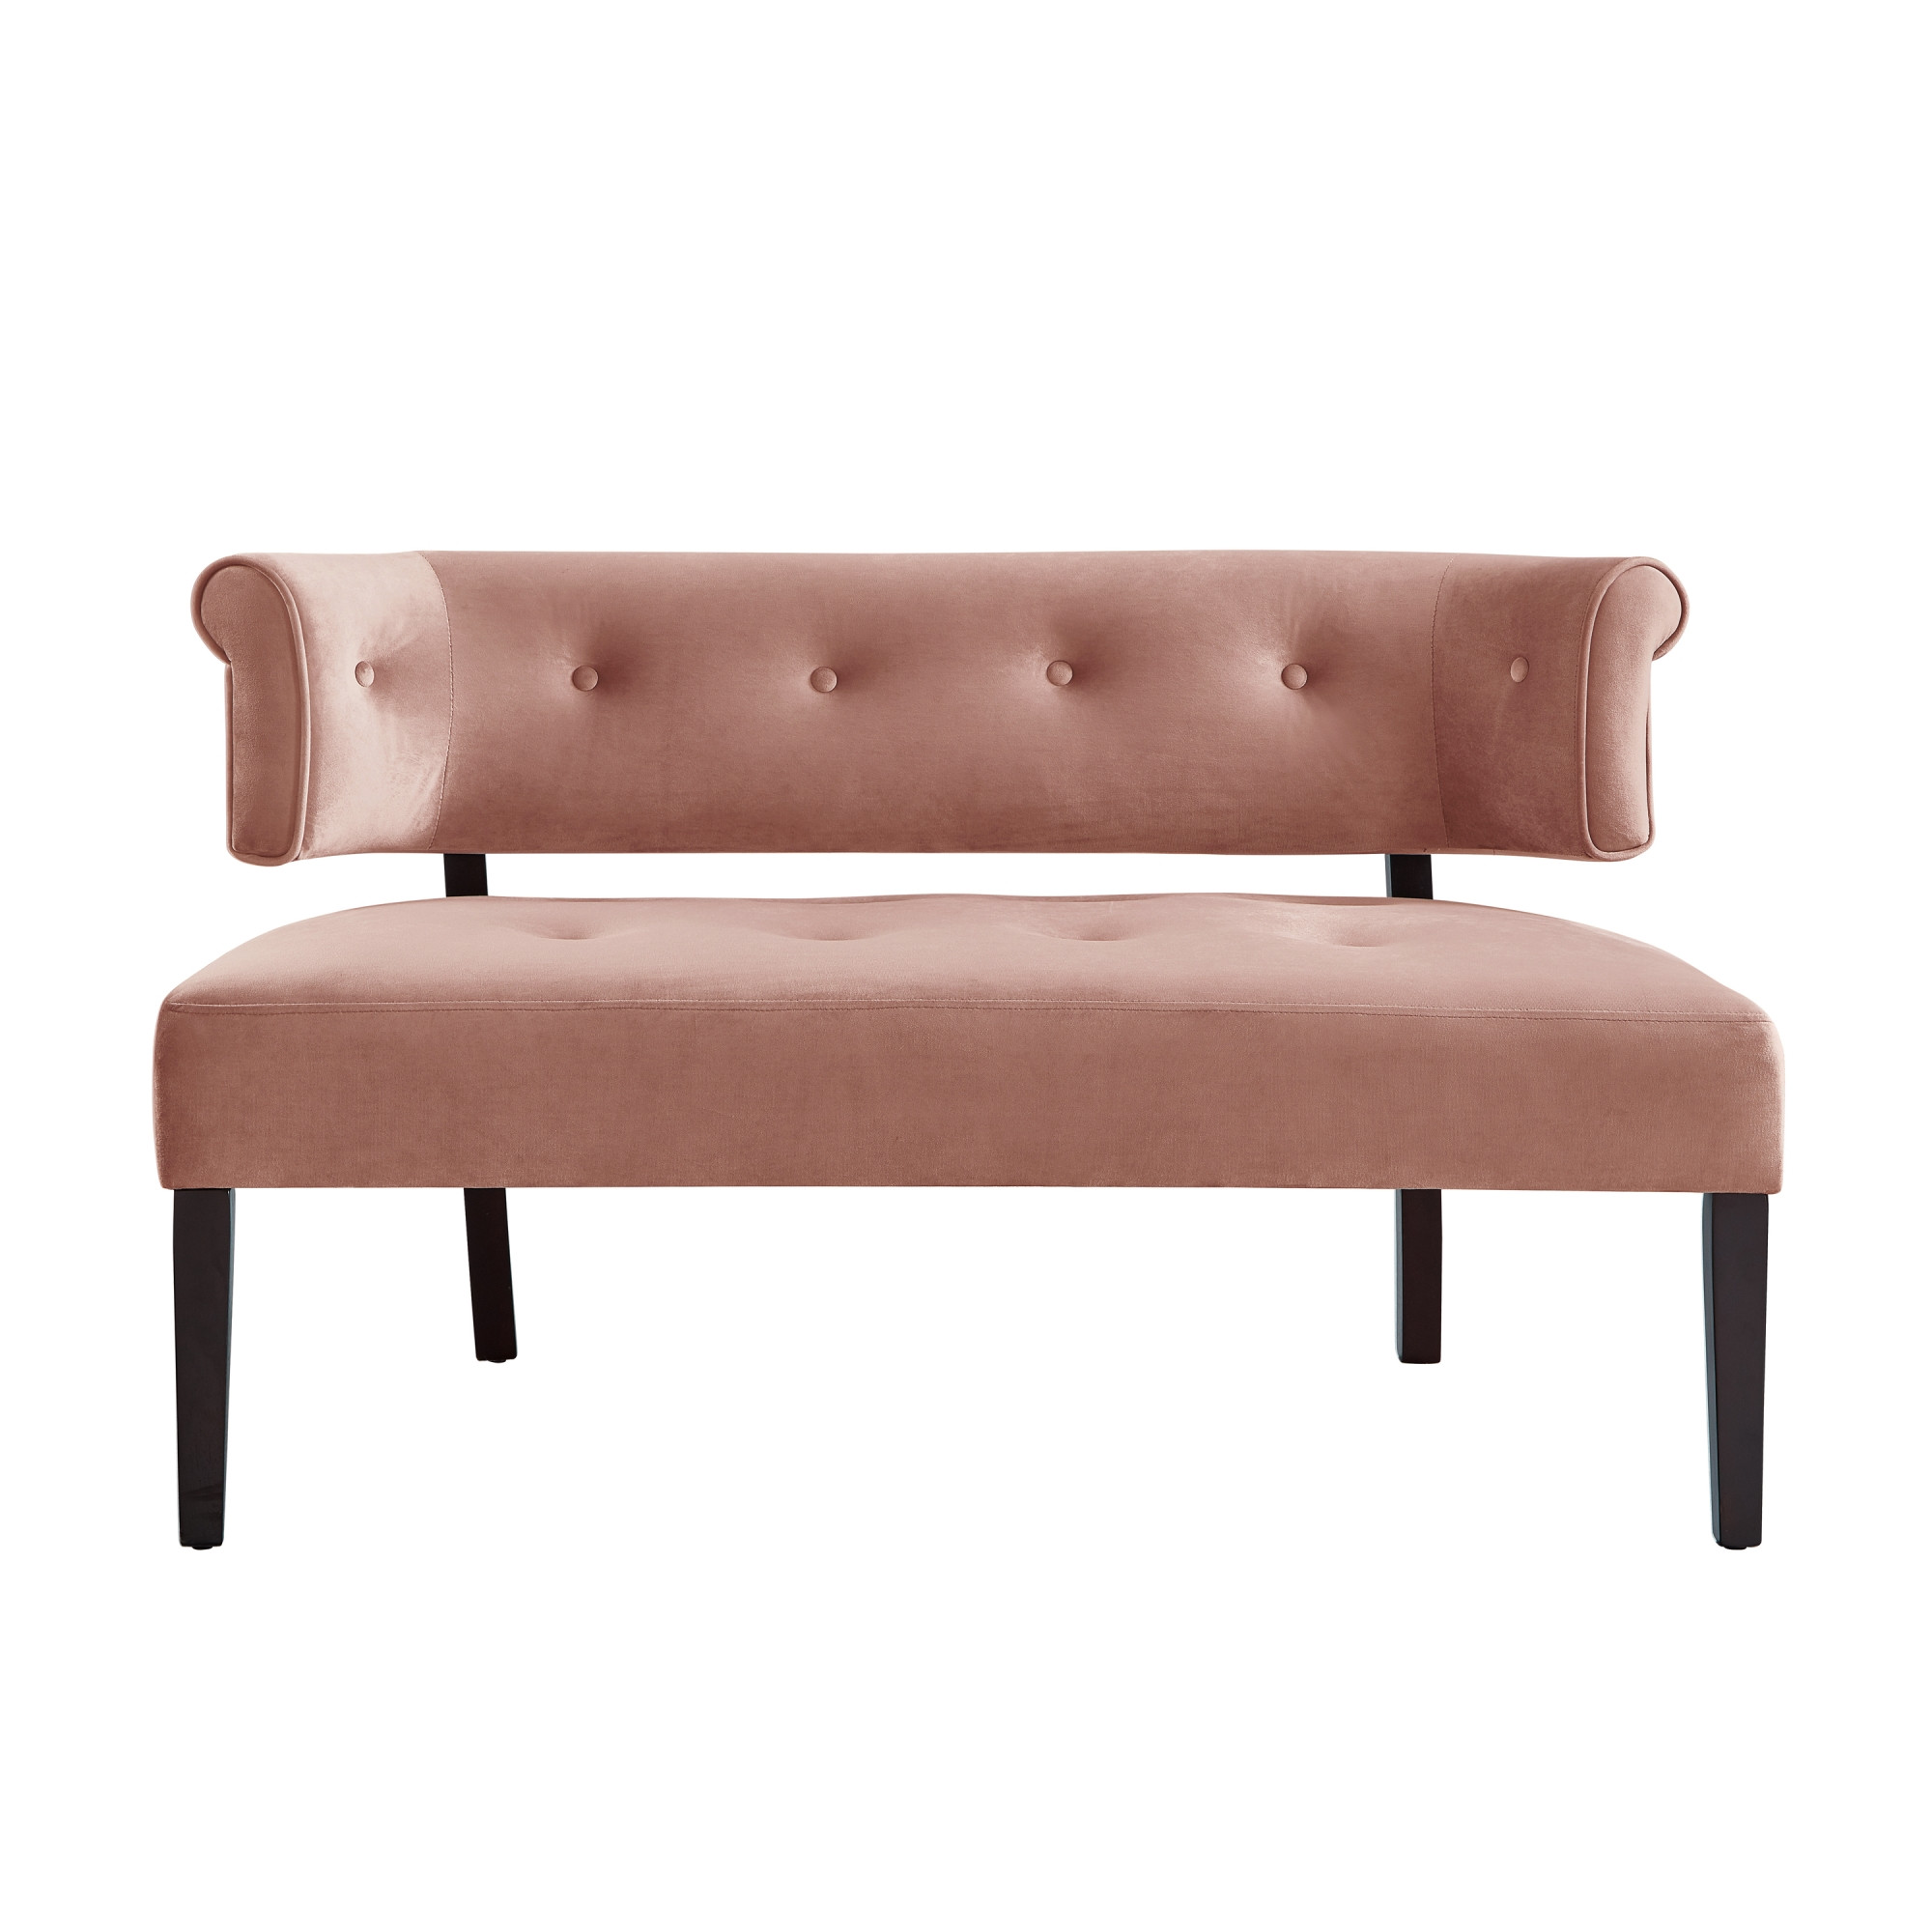 48" Blush And Brown Upholstered Velvet Bench-490860-1